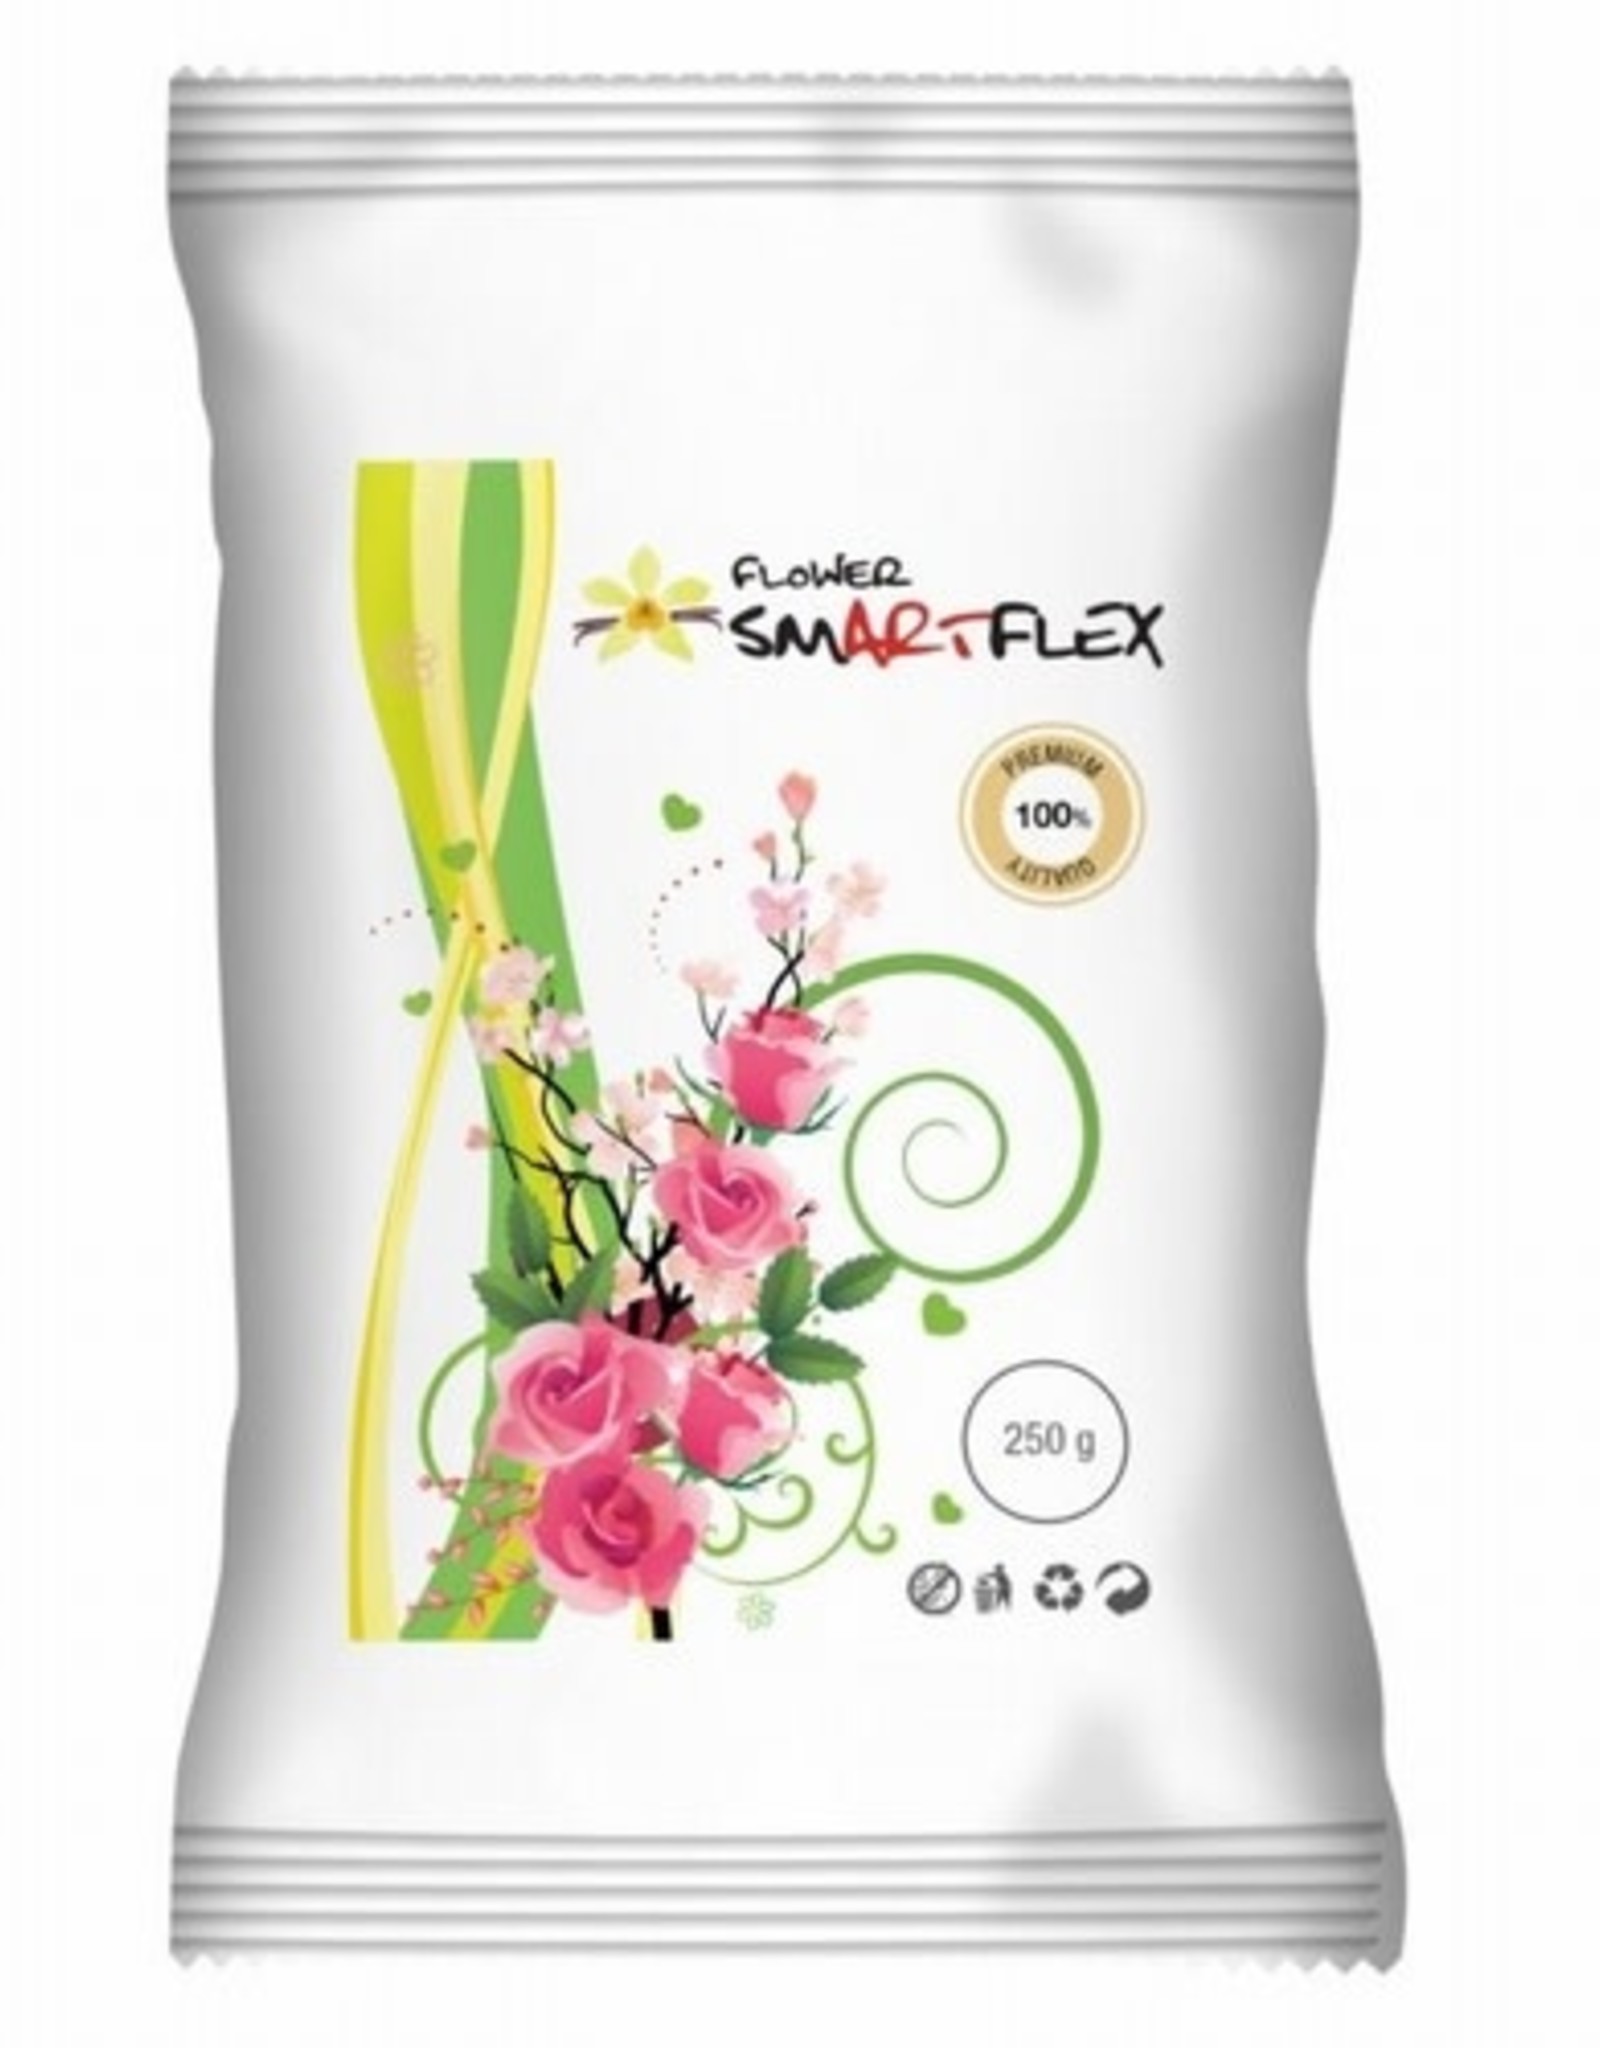 Smartflex SmartFlex Flower 250g